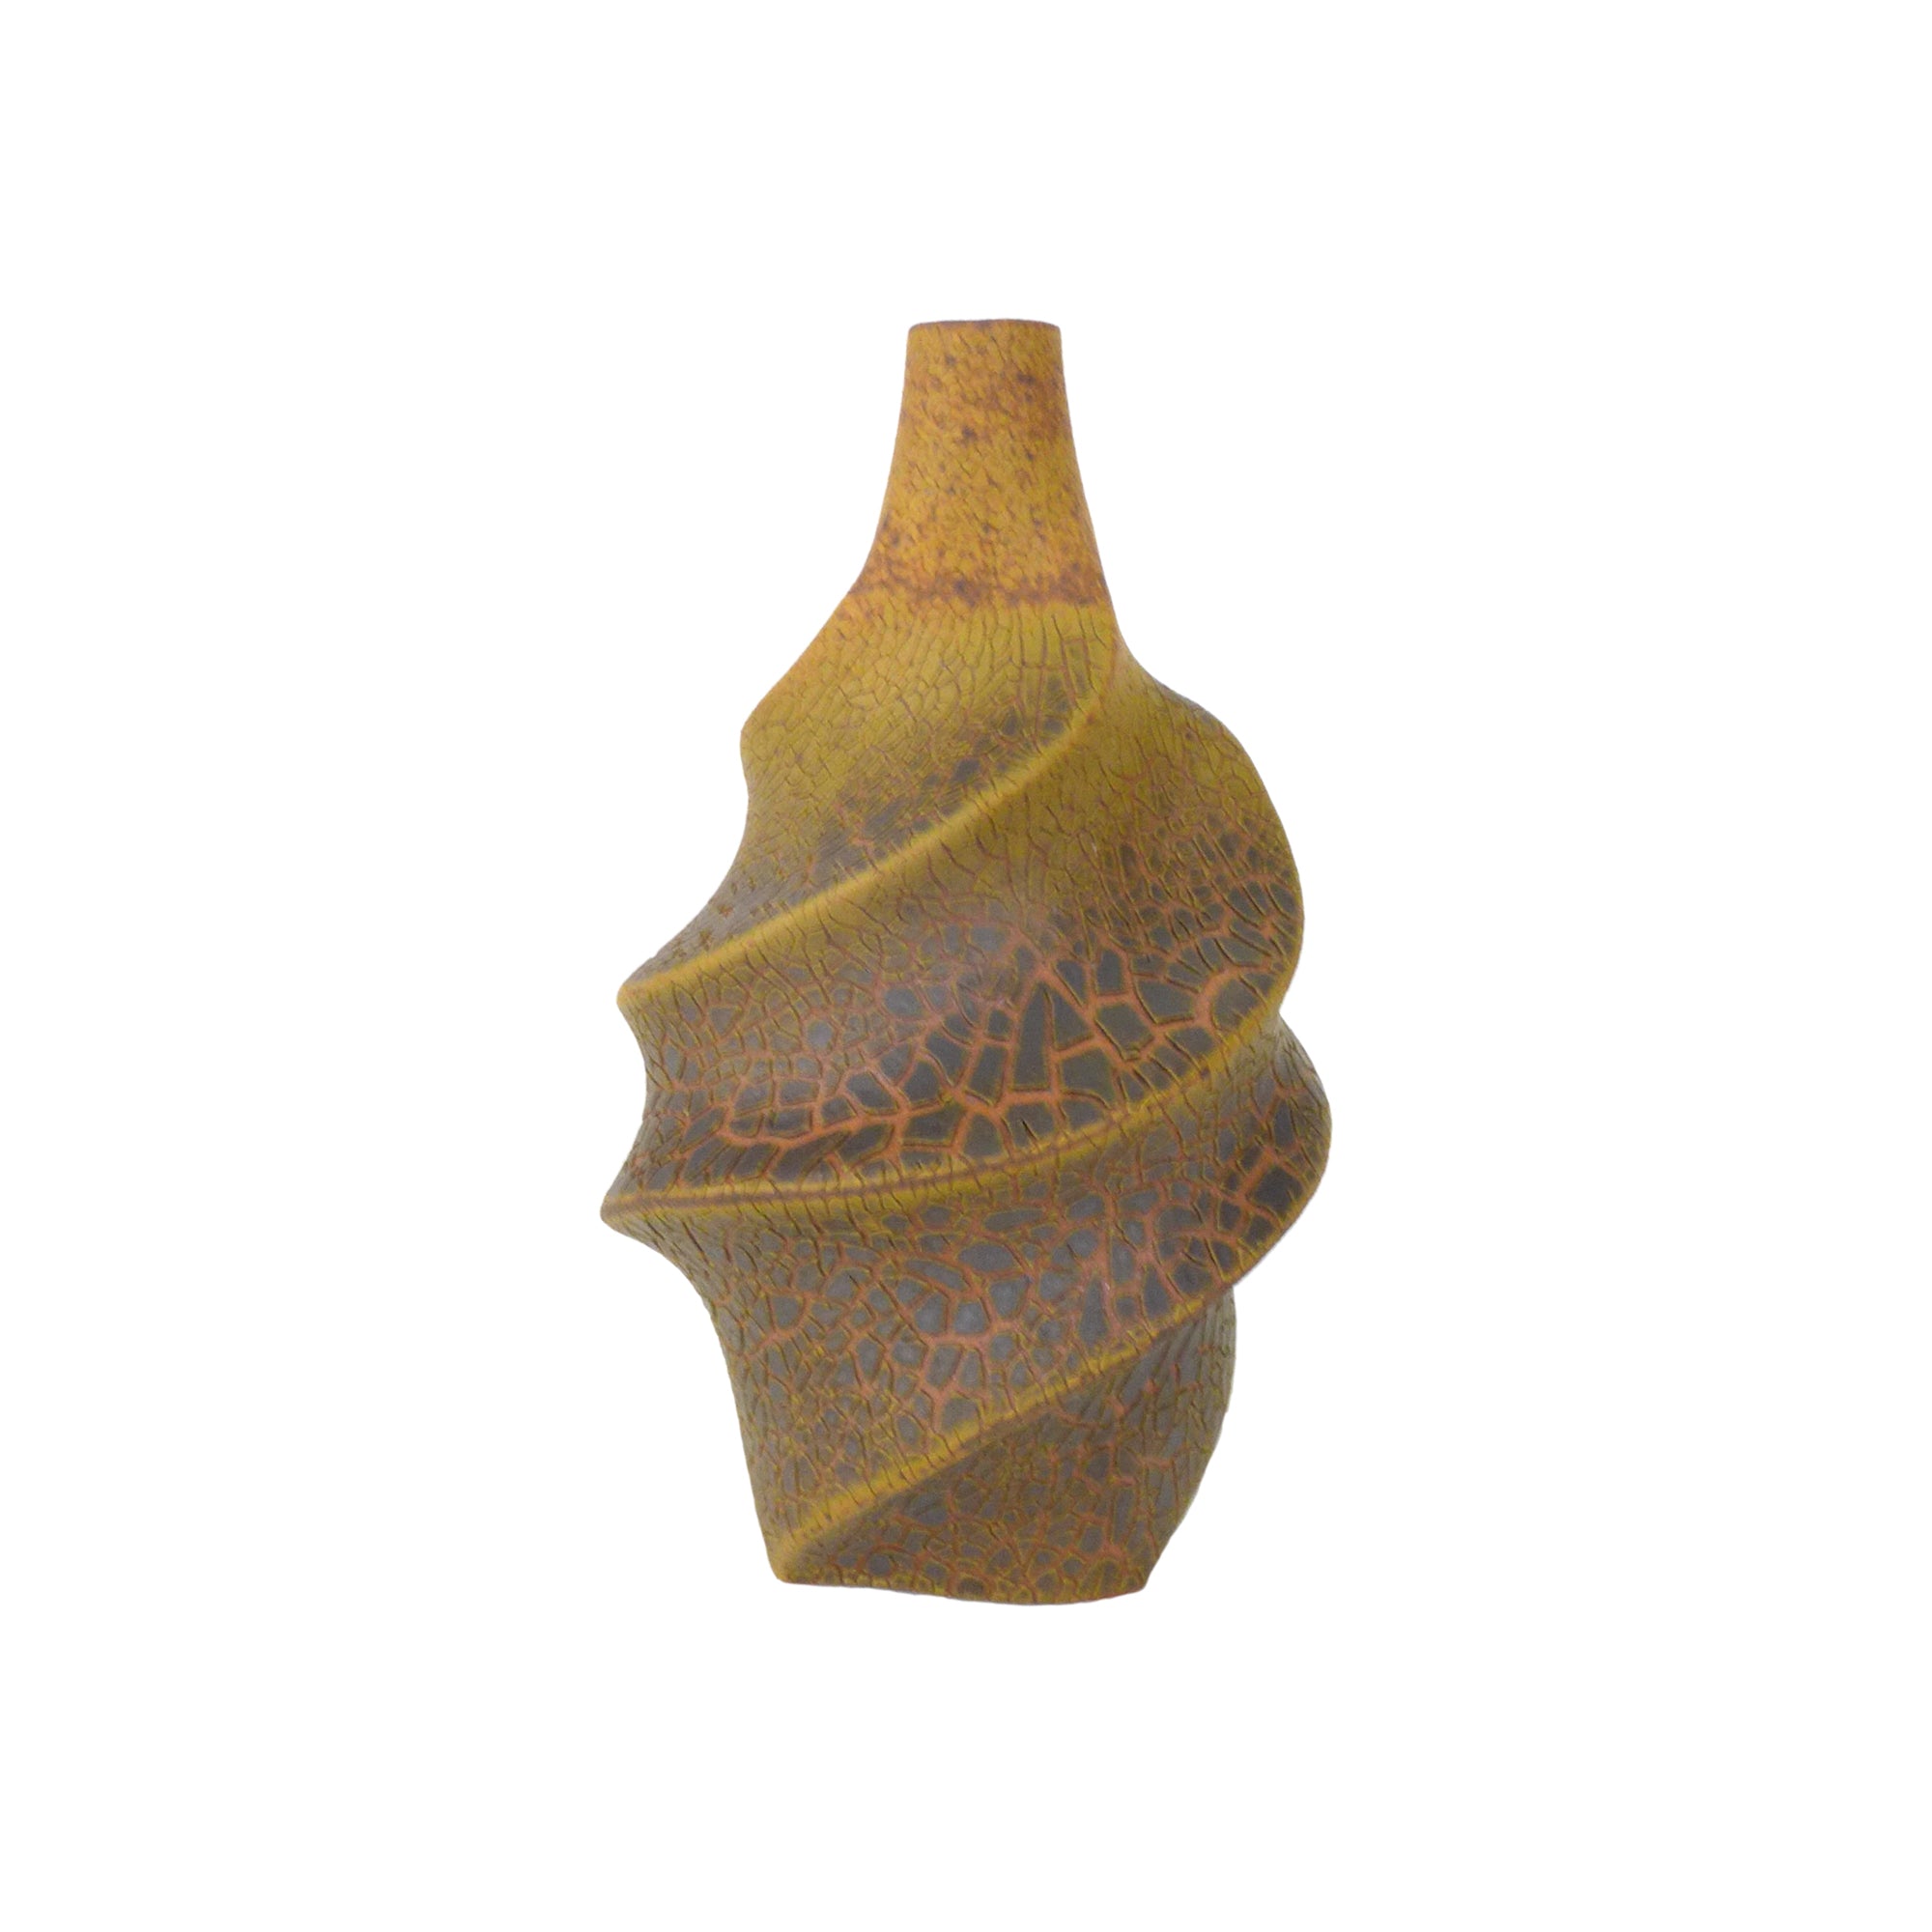 Studio Ceramic Spiraling Crackle Glaze Bud Vase by Ellen Fager